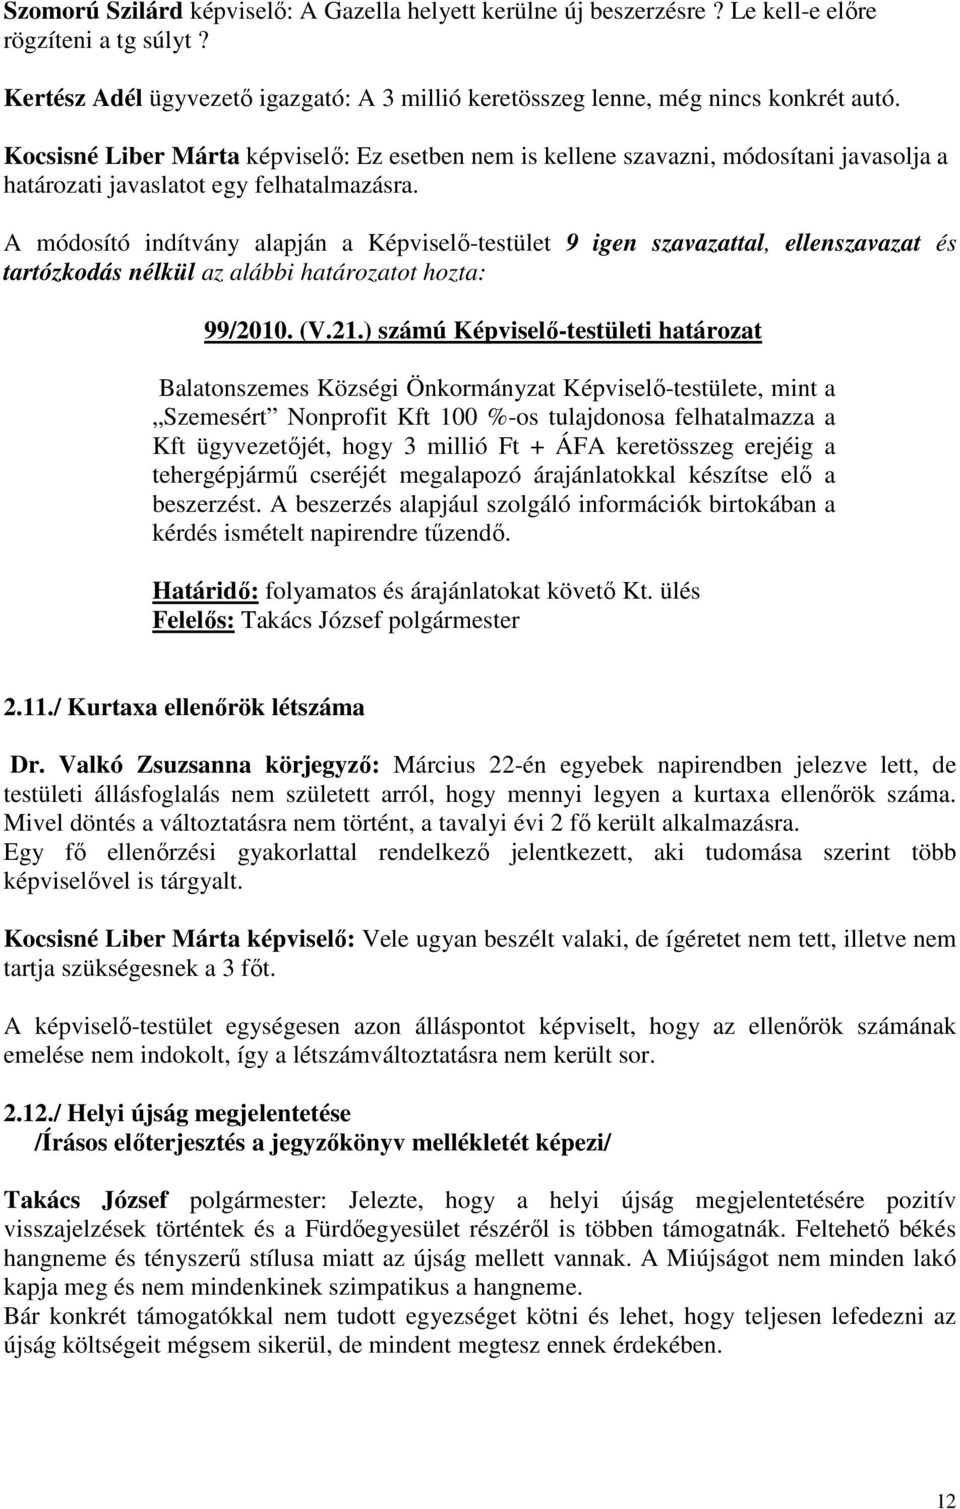 A módosító indítvány alapján a Képviselı-testület 9 igen szavazattal, ellenszavazat és tartózkodás 99/2010. (V.21.